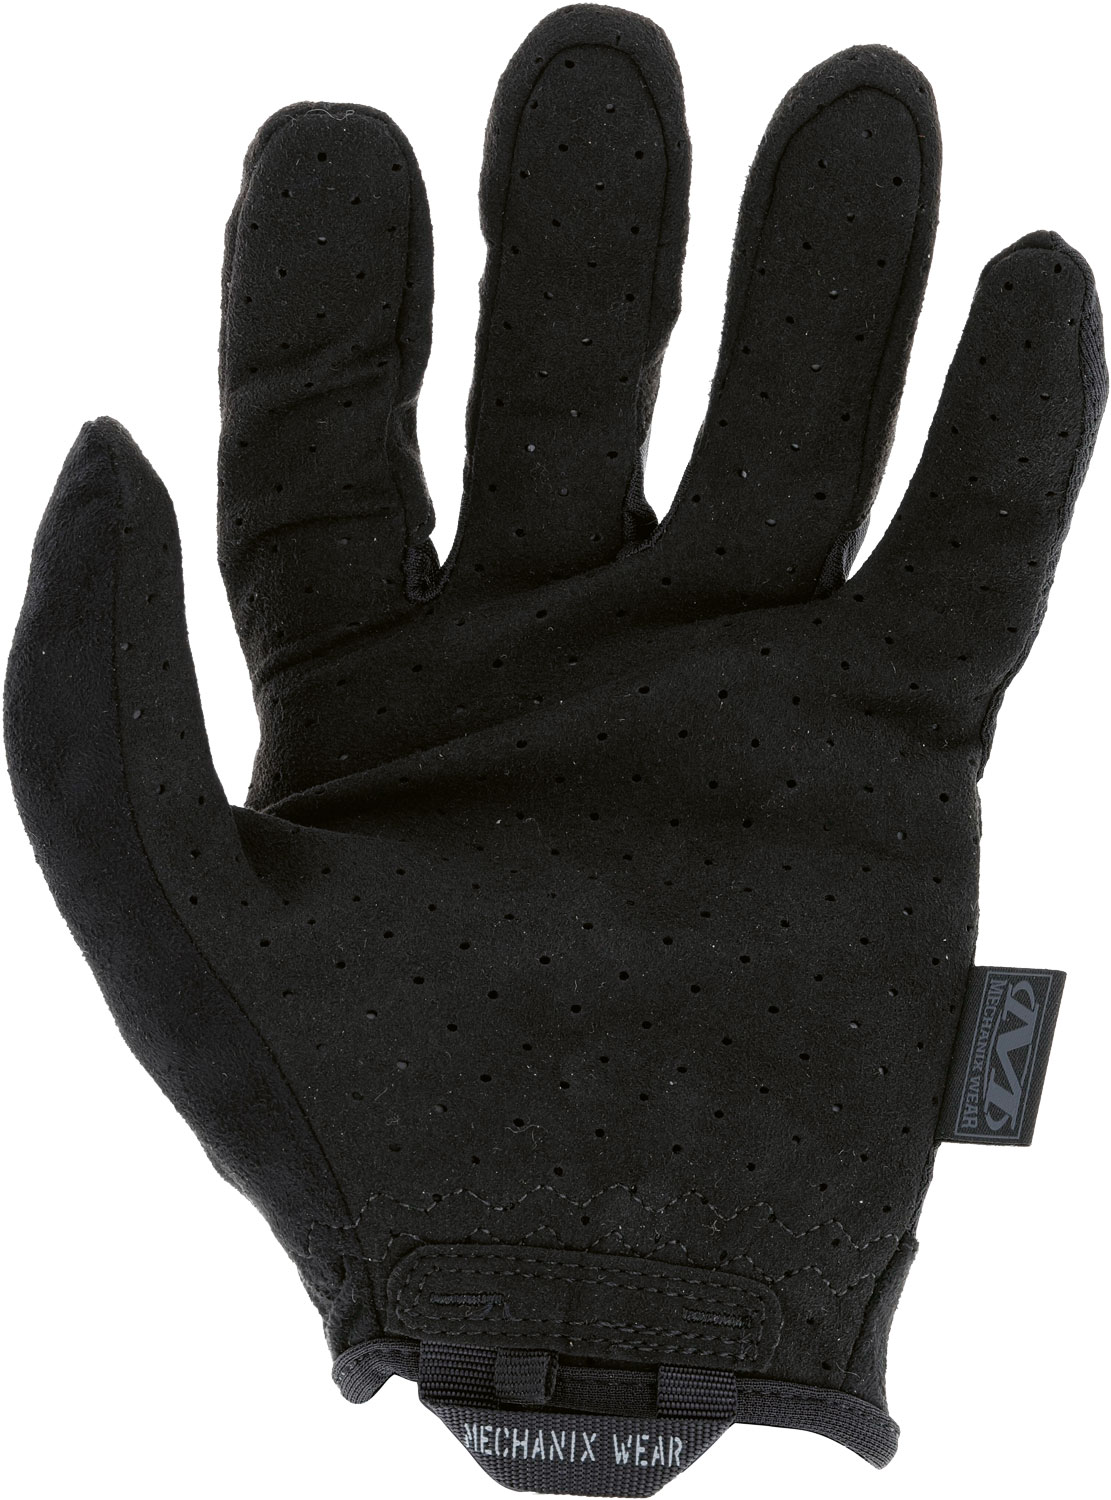 Mechanix Wear Handschuh Specialty Vent Cover